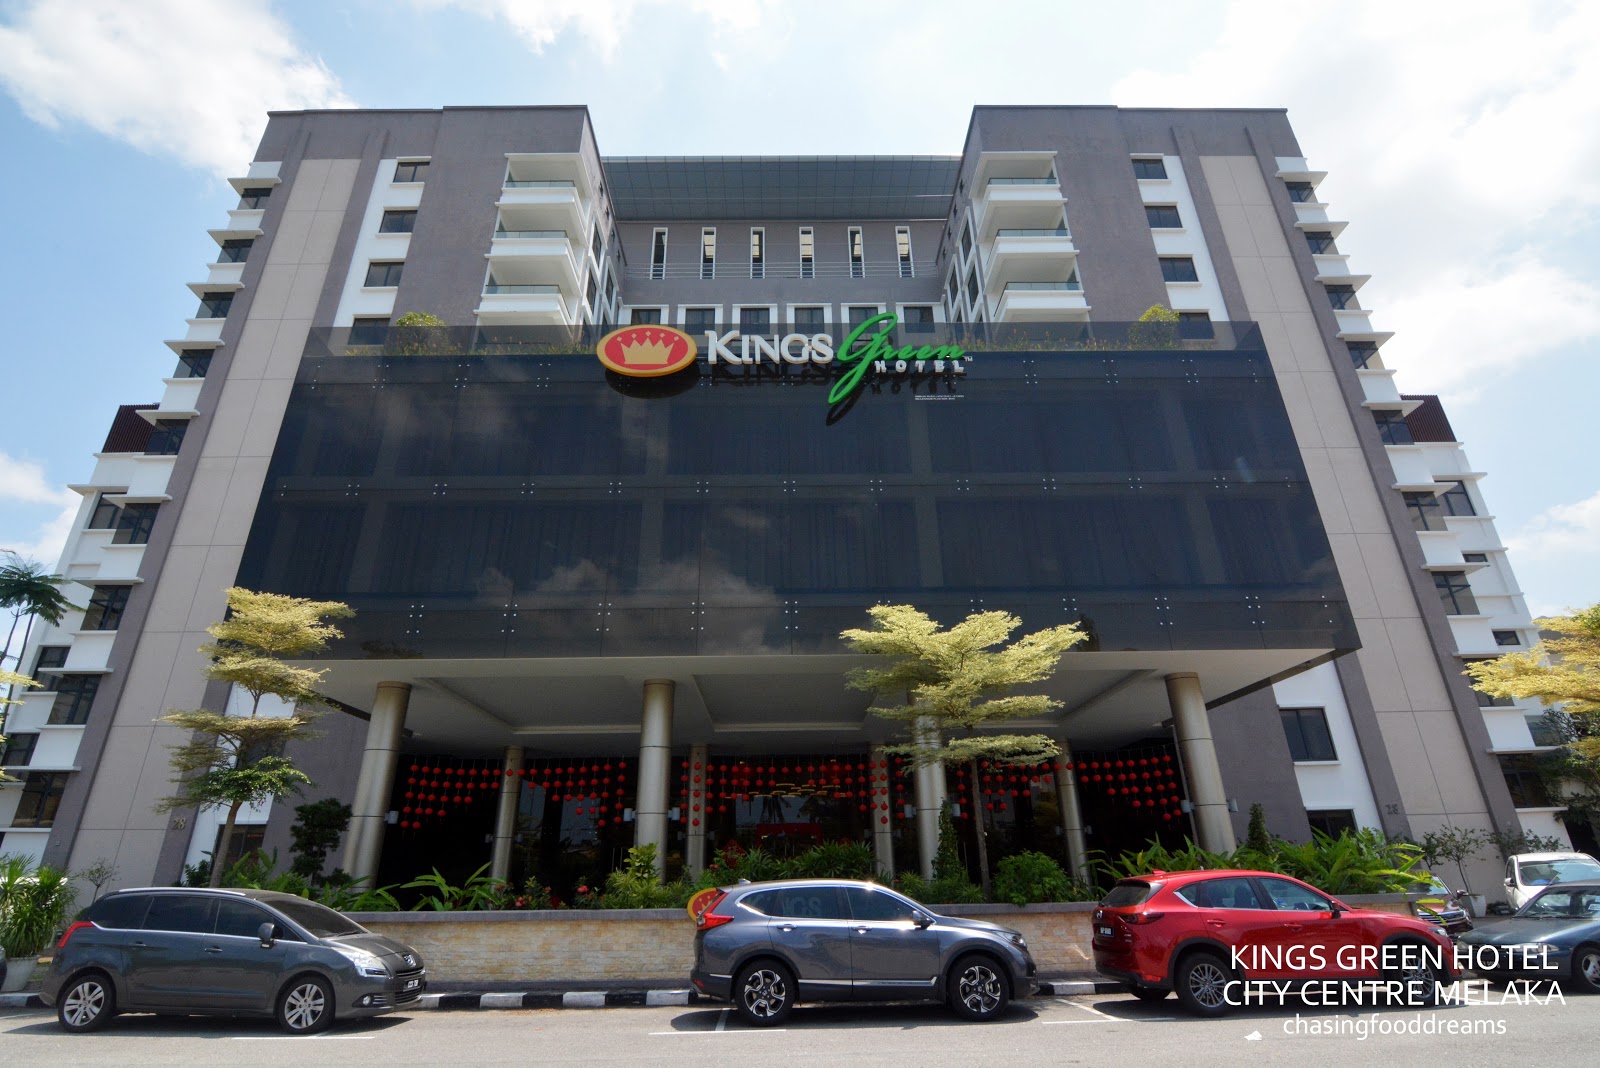 Melaka king green hotel Kings Green